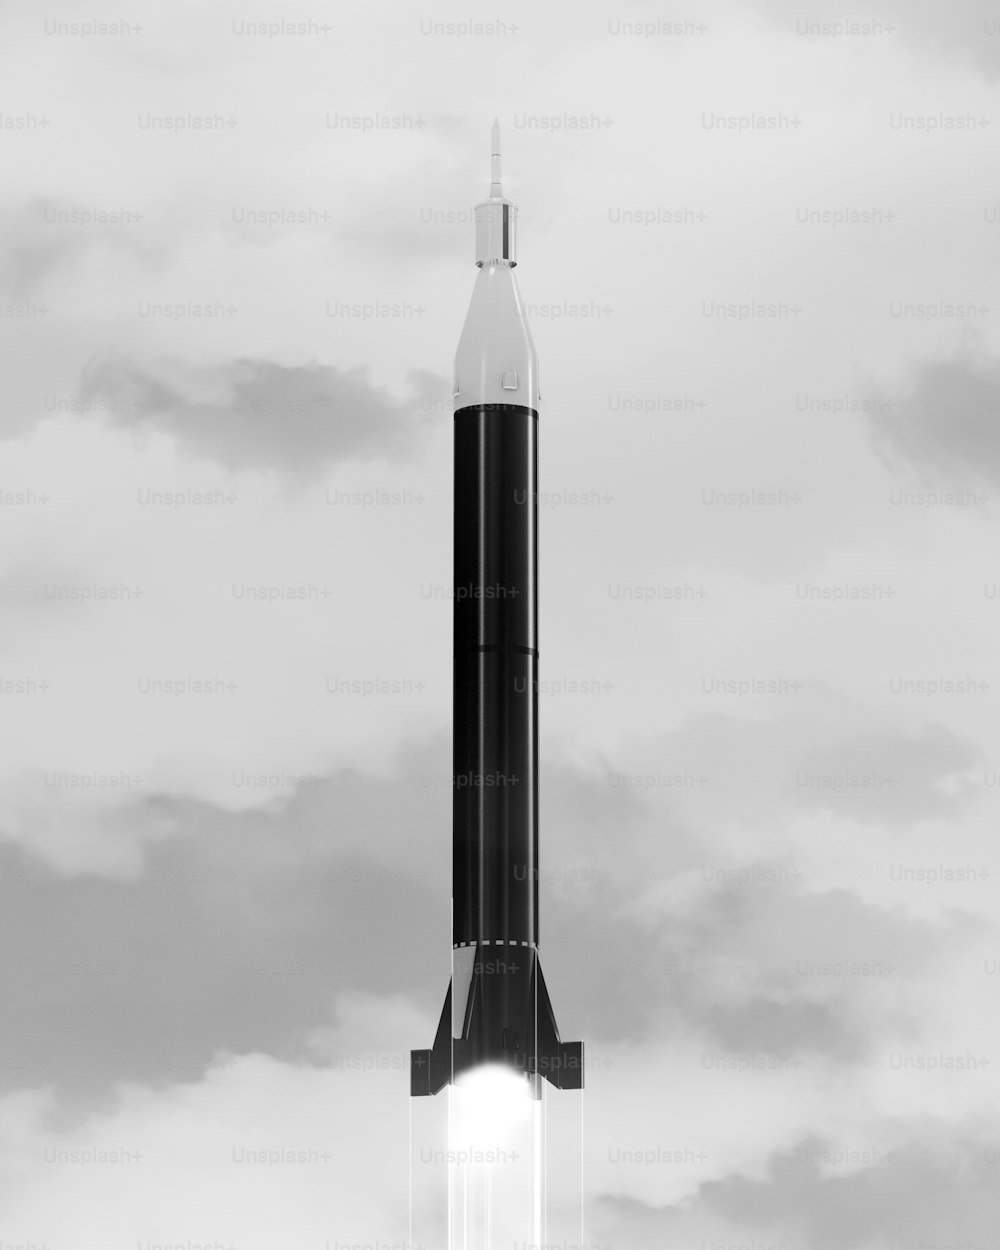 Una foto en blanco y negro de un cohete